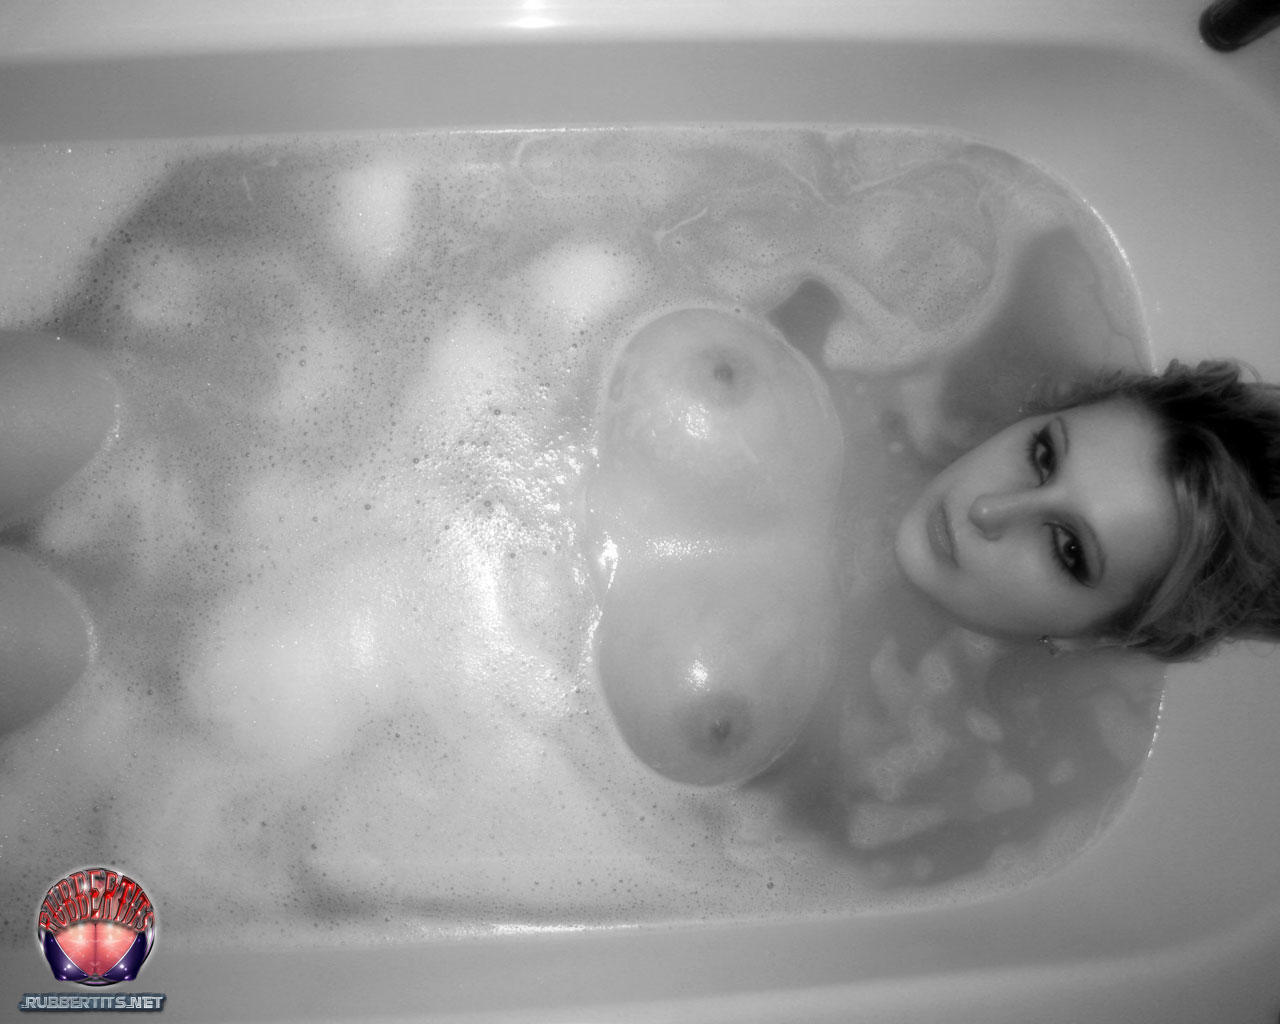 Rubber Tits Bathtime photo porno #426805766 | Rubber Tits Pics, Bath, porno mobile